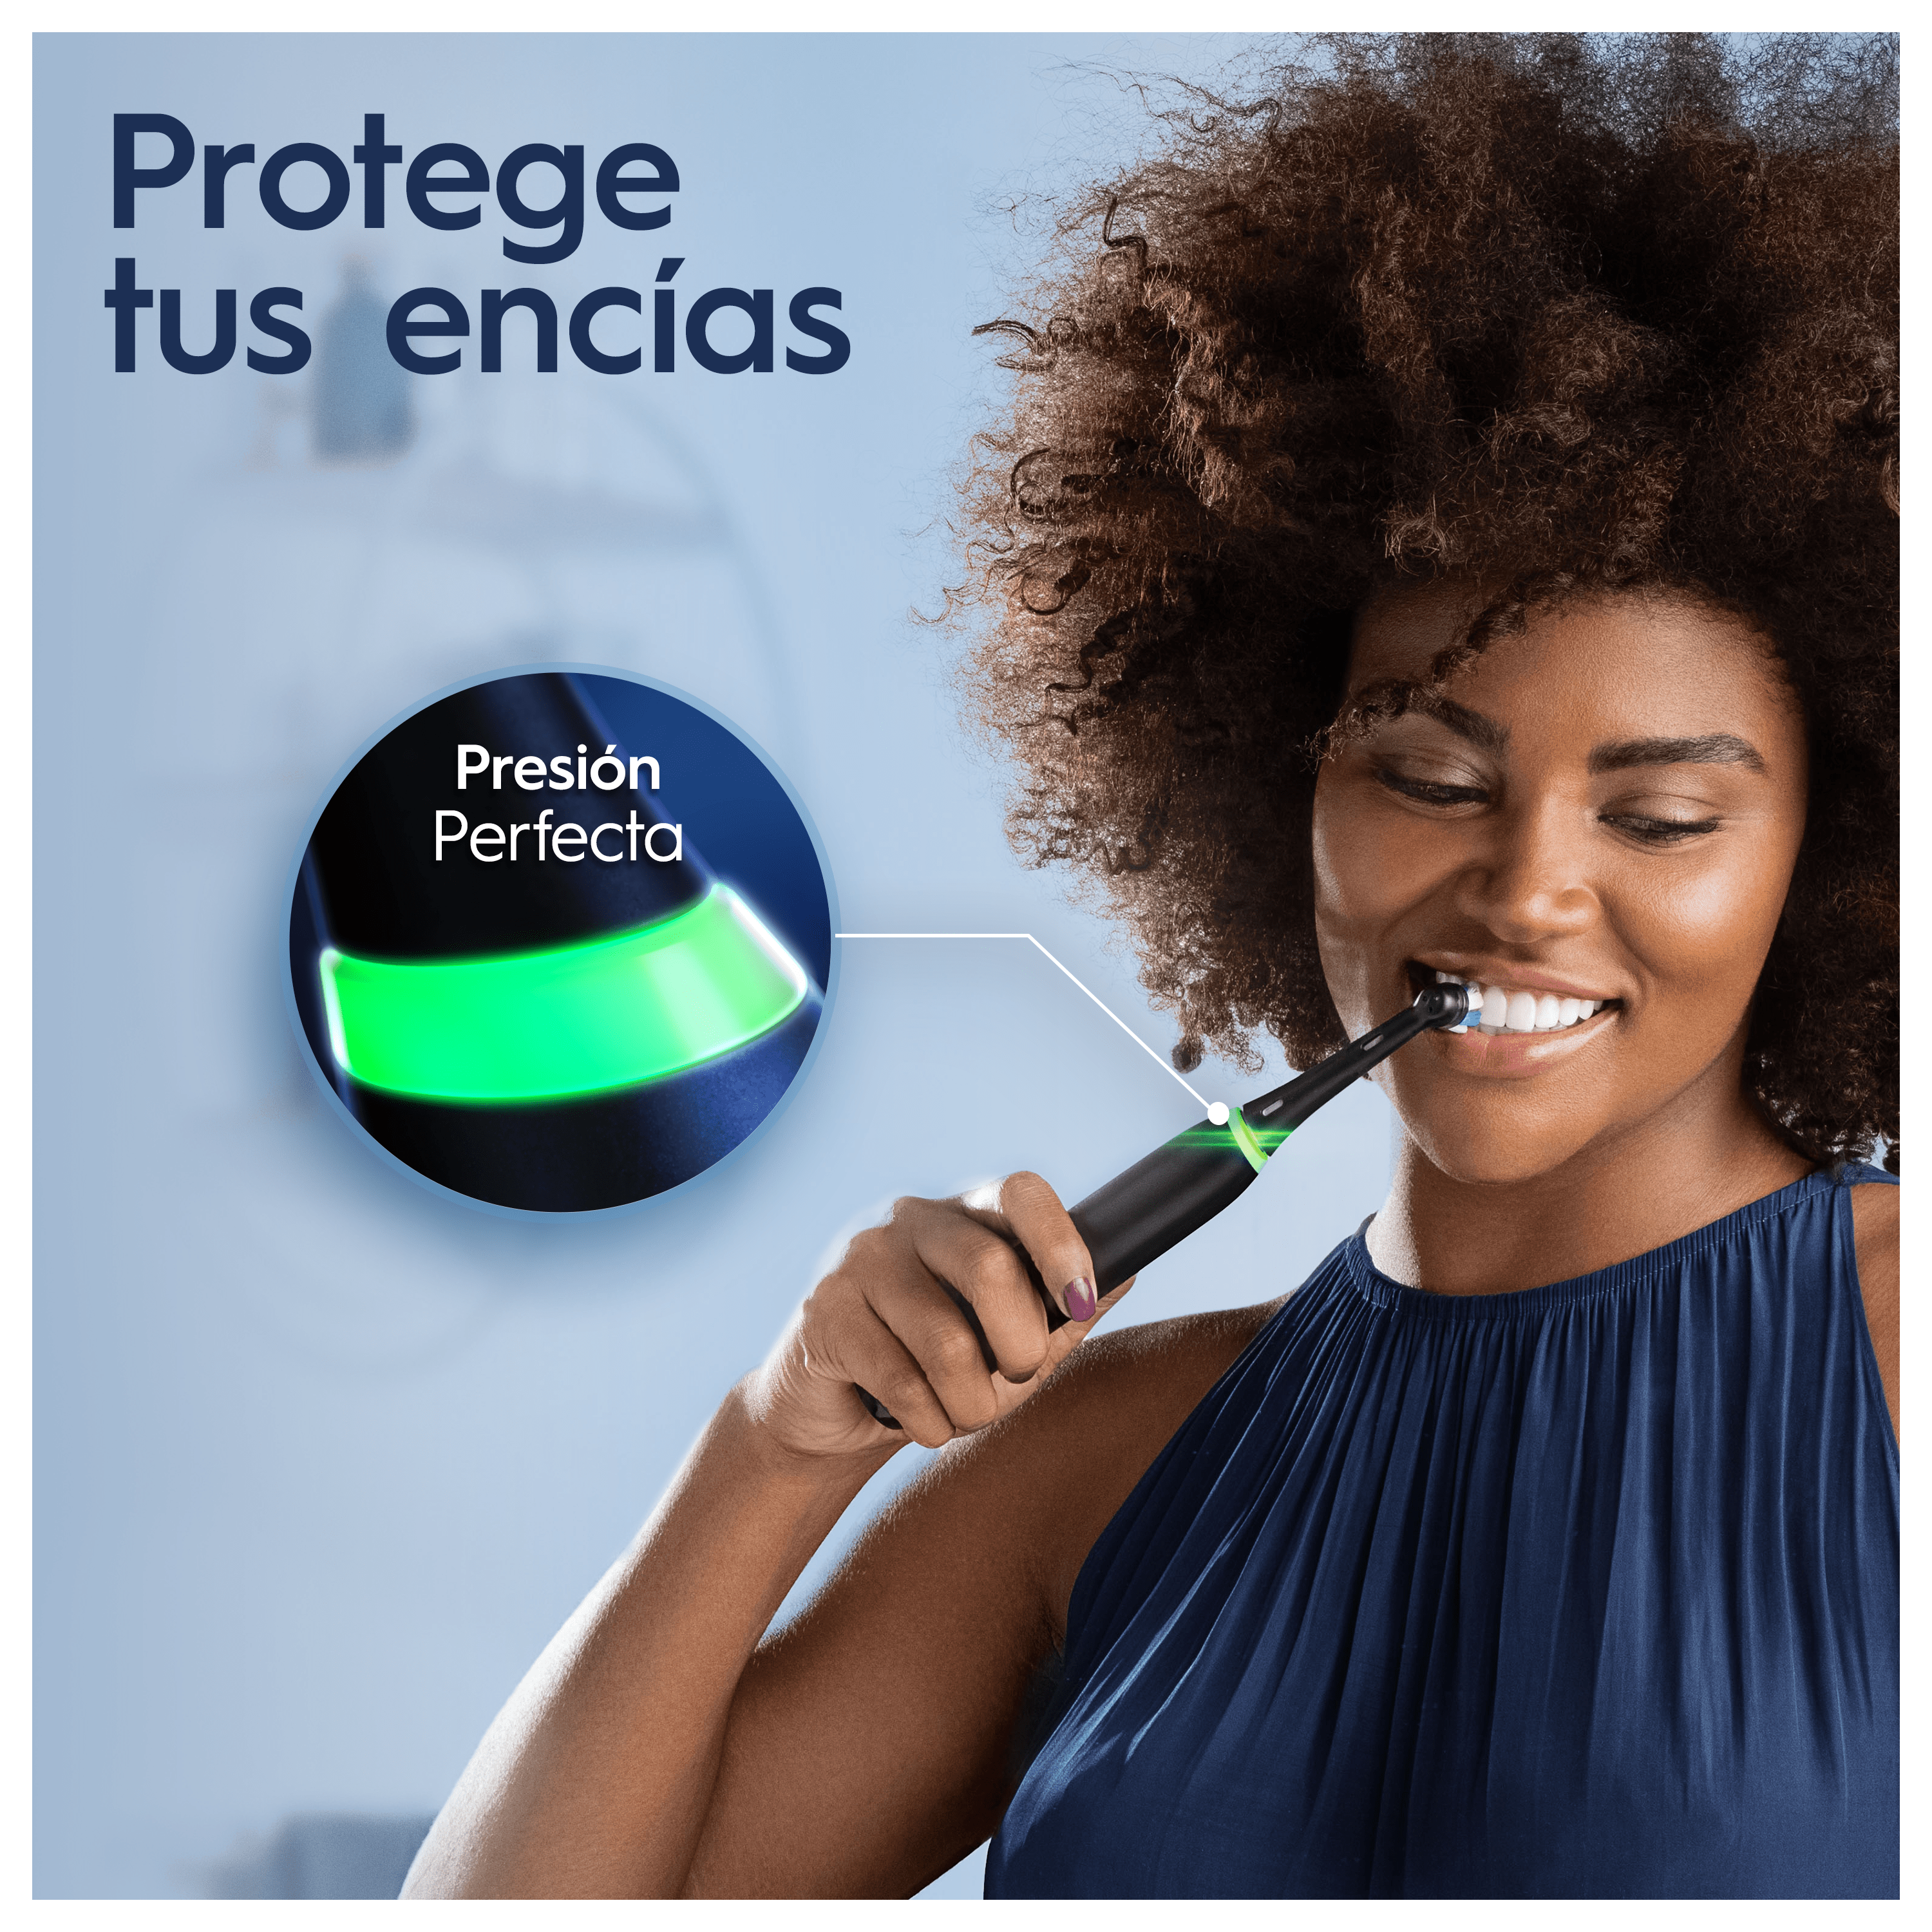 Oral b cepillo eléctrico io 6 negro: higiene completa y eficiente